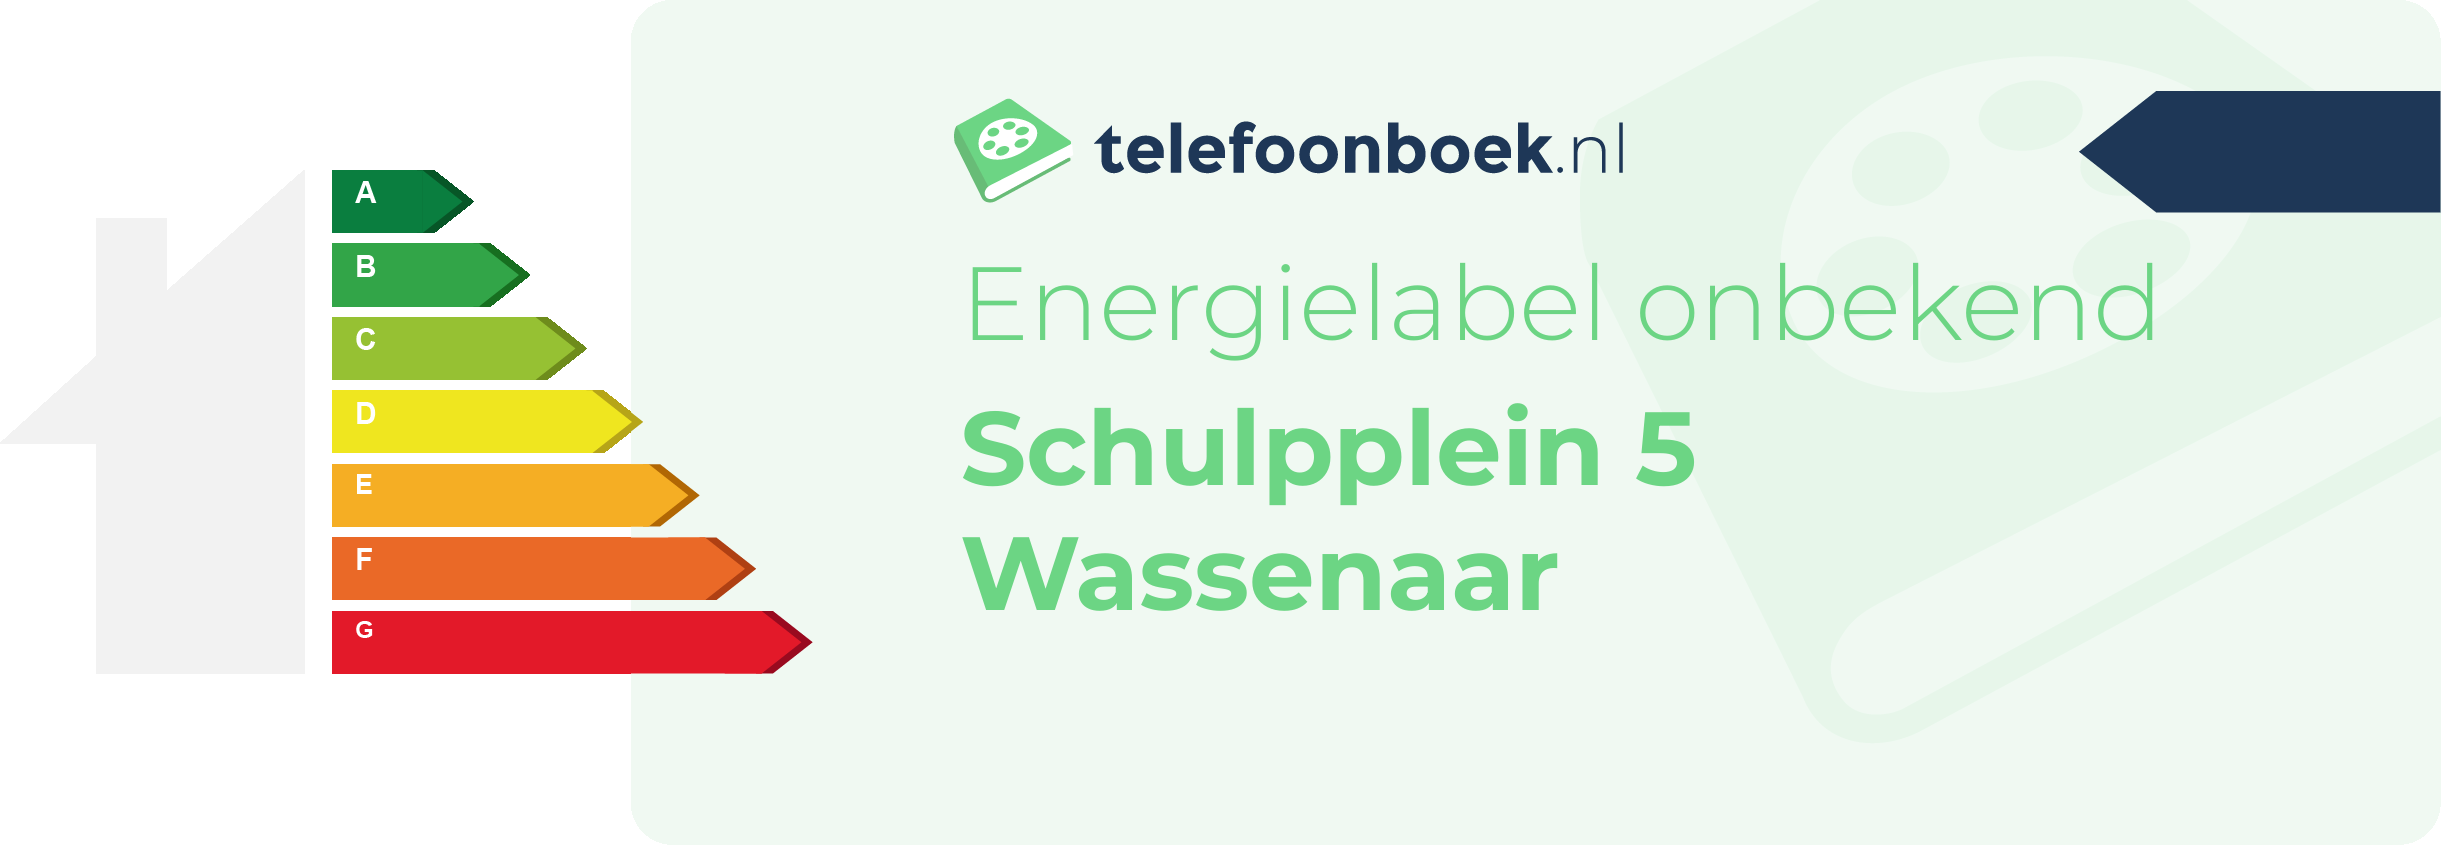 Energielabel Schulpplein 5 Wassenaar